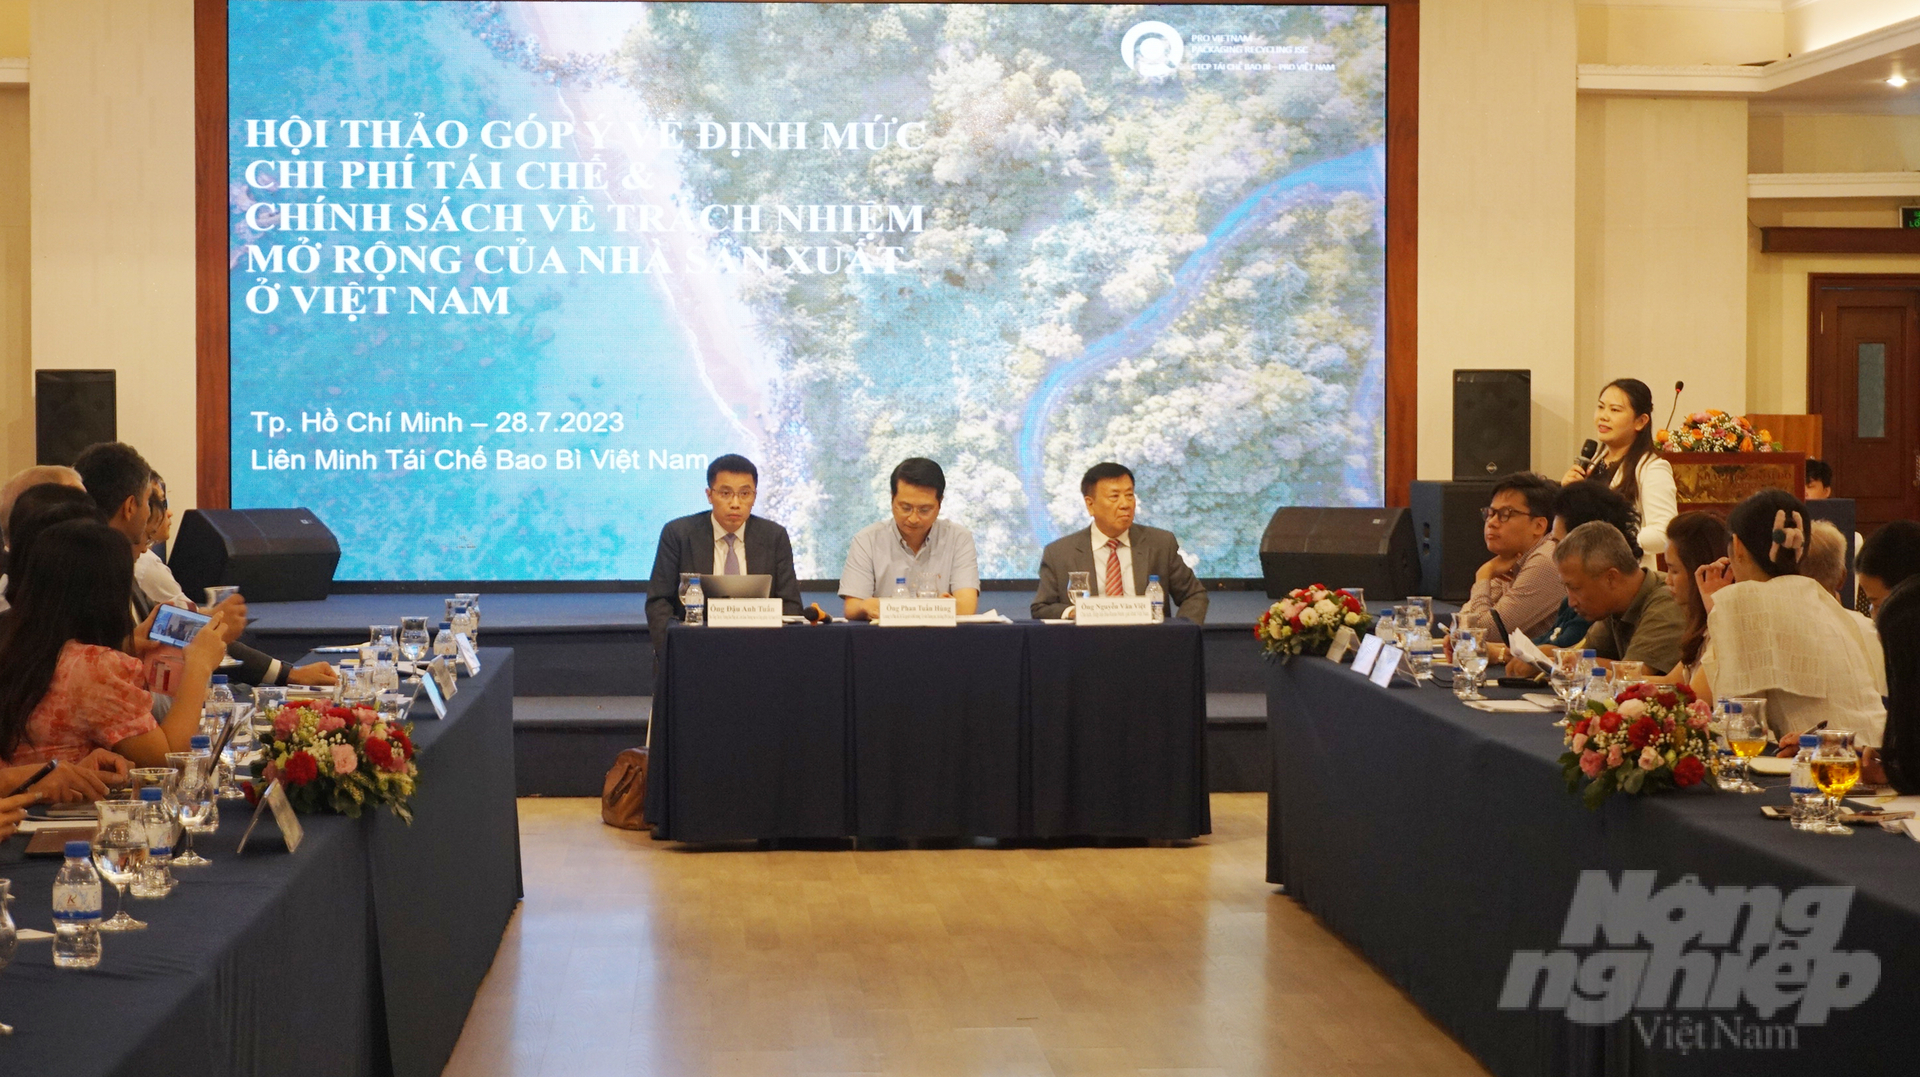 Hội thảo góp ý về định mức chi phí tái chế và chính sách về trách nhiệm mở rộng của nhà sản xuất ở Việt Nam. Ảnh: Nguyễn Thủy.